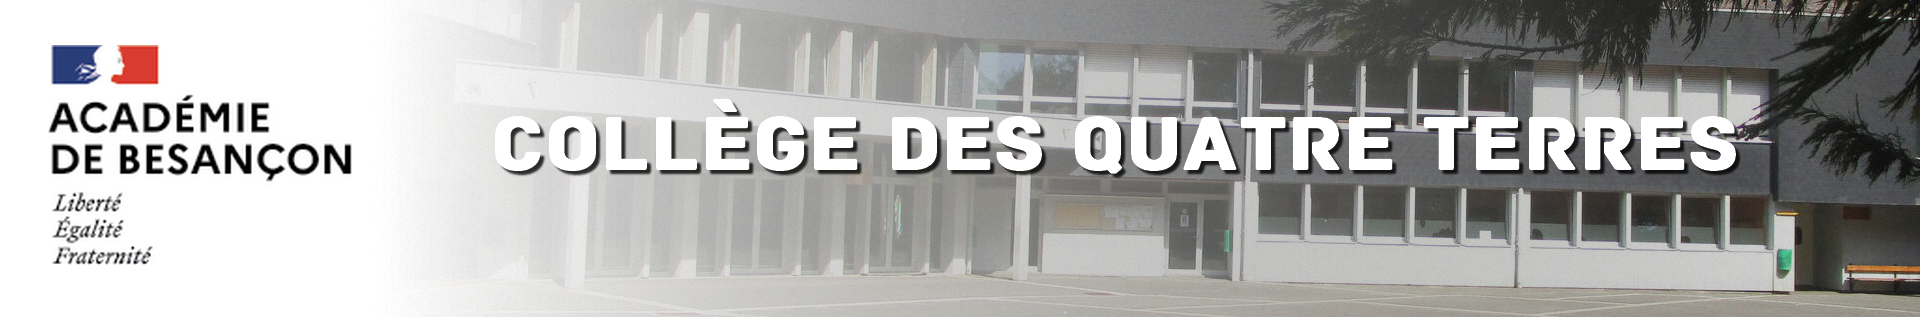 Headband Bourgogne Franche-Comté - Collège des quatre terres - Hérimoncourt